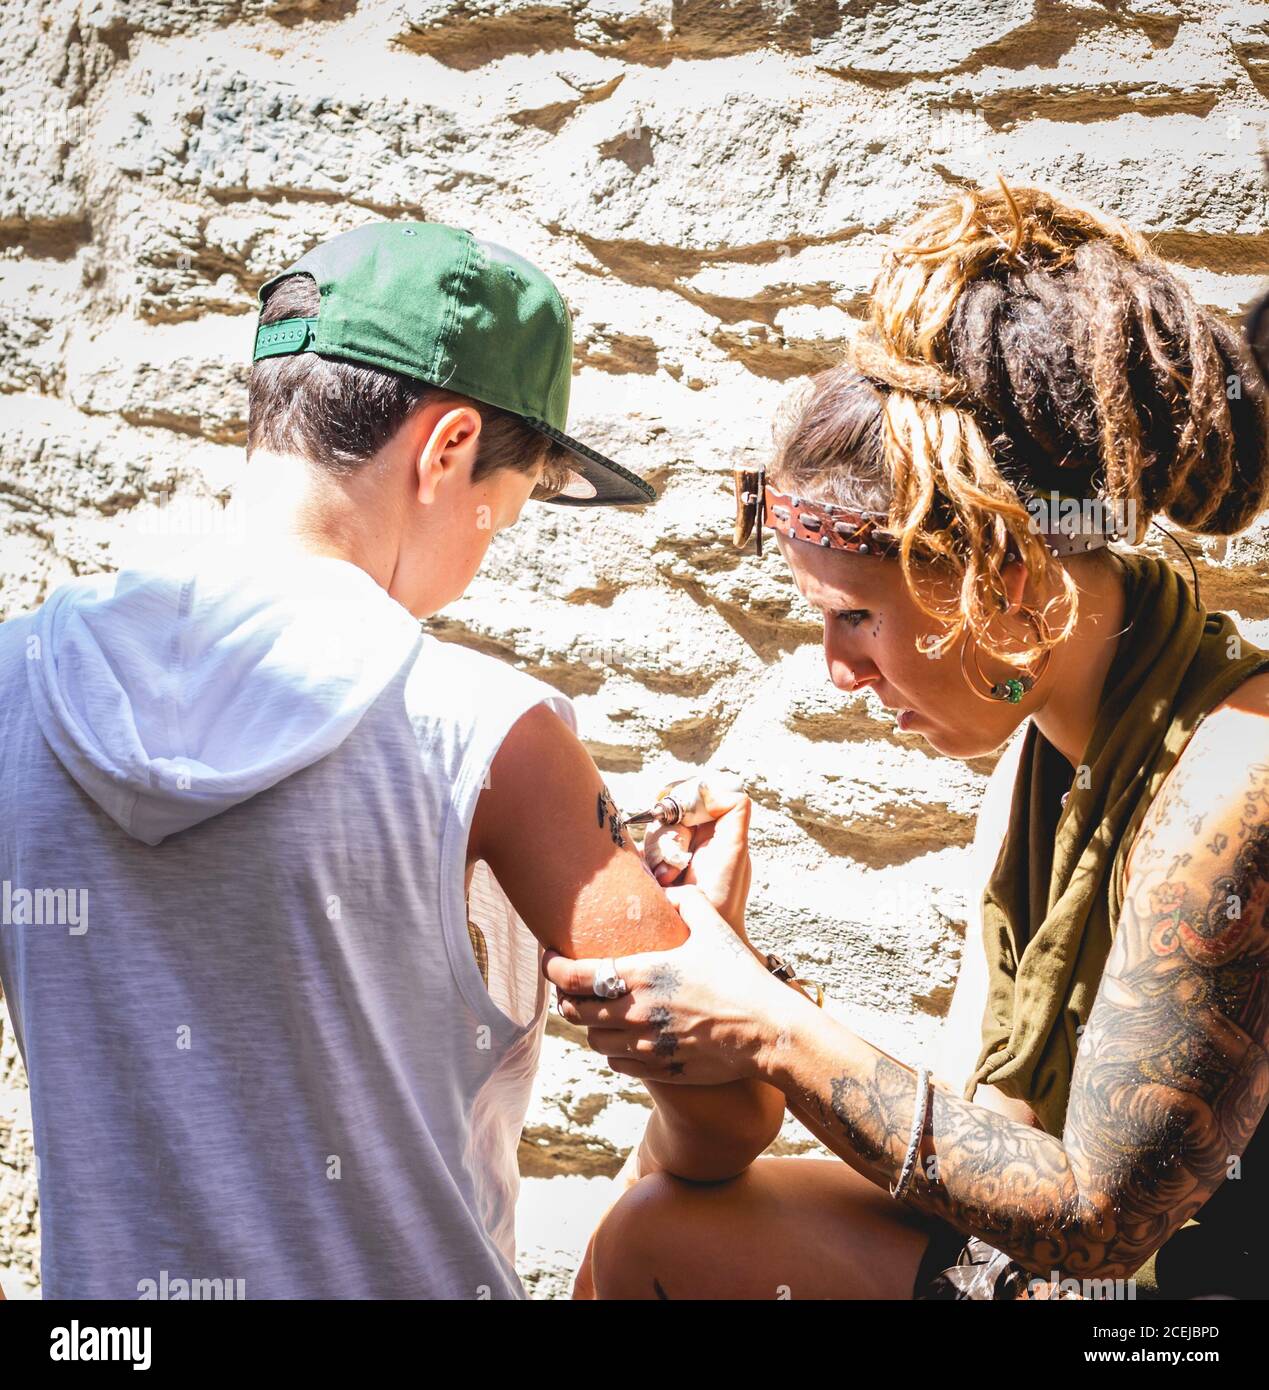 MARCHÉ MÉDIÉVAL - PUEBLA DE SANABRIA - ZAMORA - ESPAGNE - AGOUST 13, 2017: Femme adulte assise et dessinant un tatouage instantané avec de la peinture au jeune garçon au mur de pierre Banque D'Images